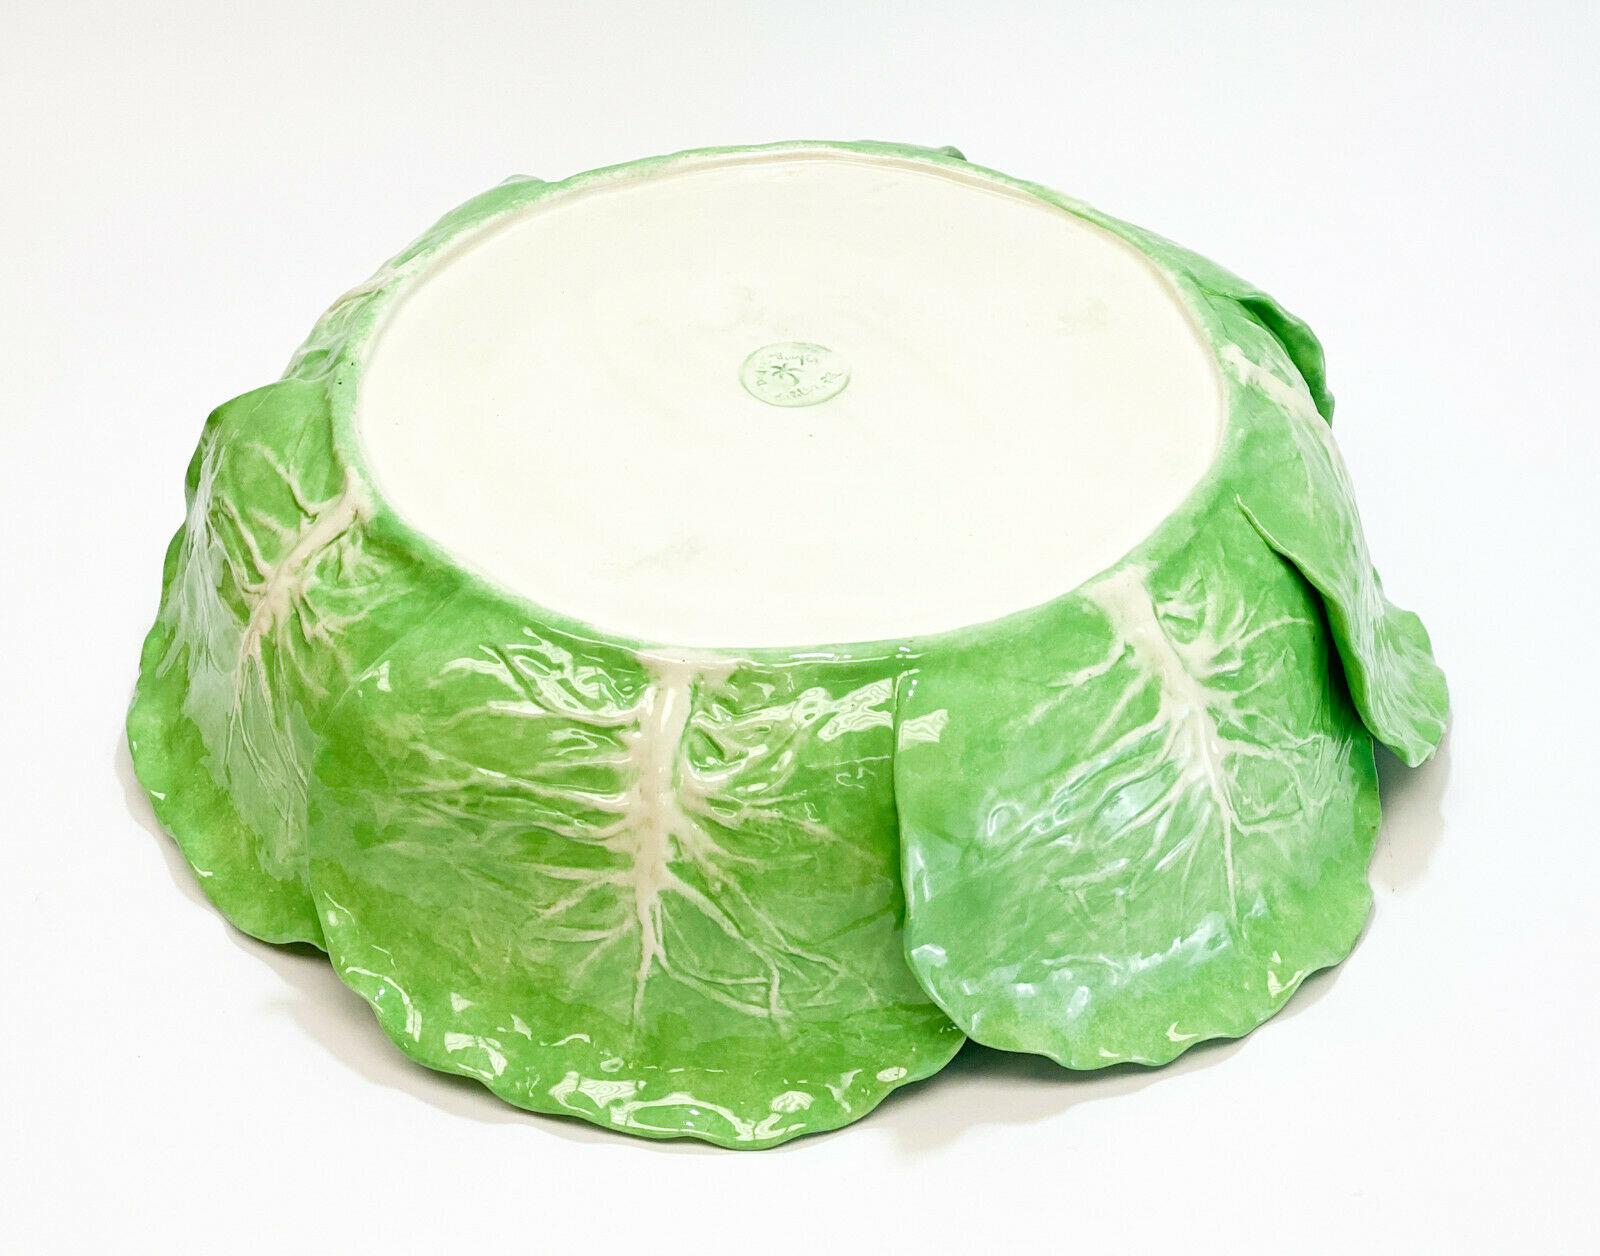 Description: Dodie Thayer Jupiter lettuce leaf earthenware porcelain hand crafted large centerpiece bowl. Signed 